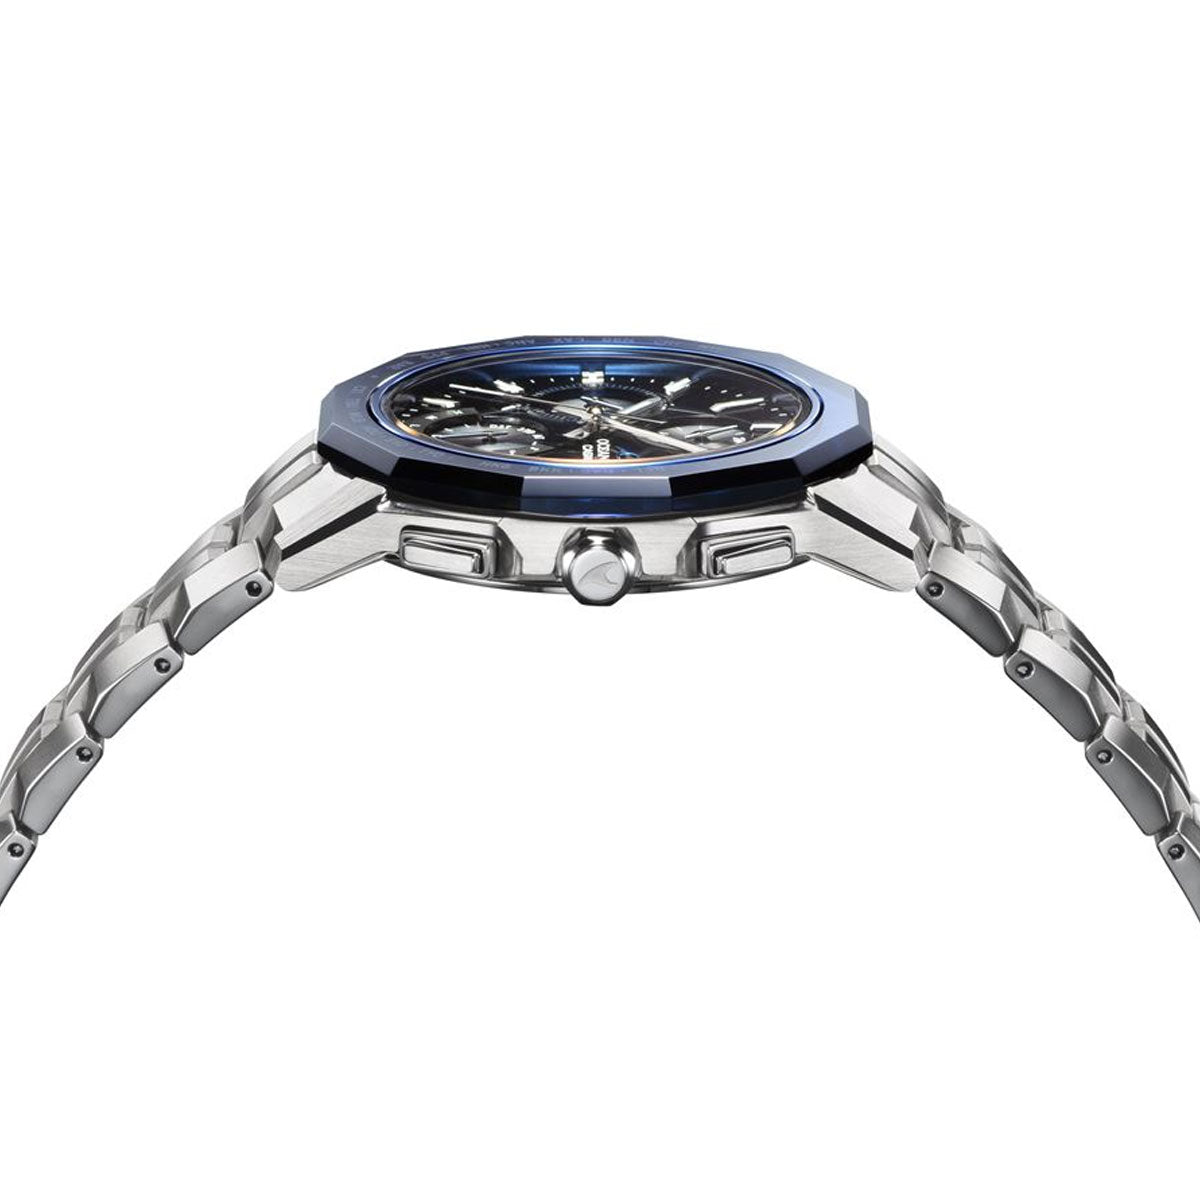 オシアナス Manta マンタ 限定モデル OCW-S6000-1AJF メンズ 腕時計